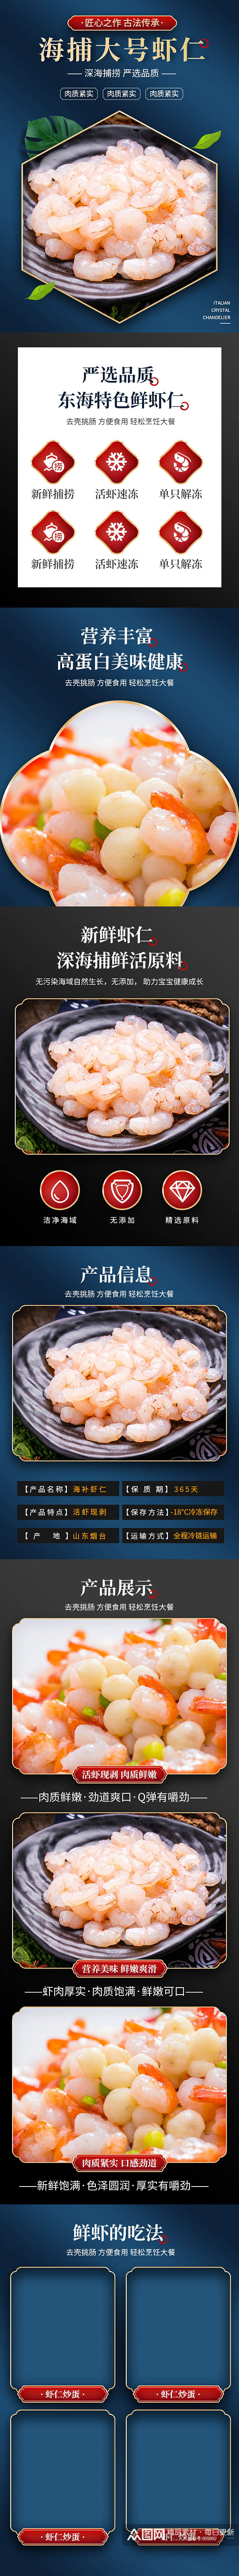 中国风海捕虾仁海鲜详情页素材